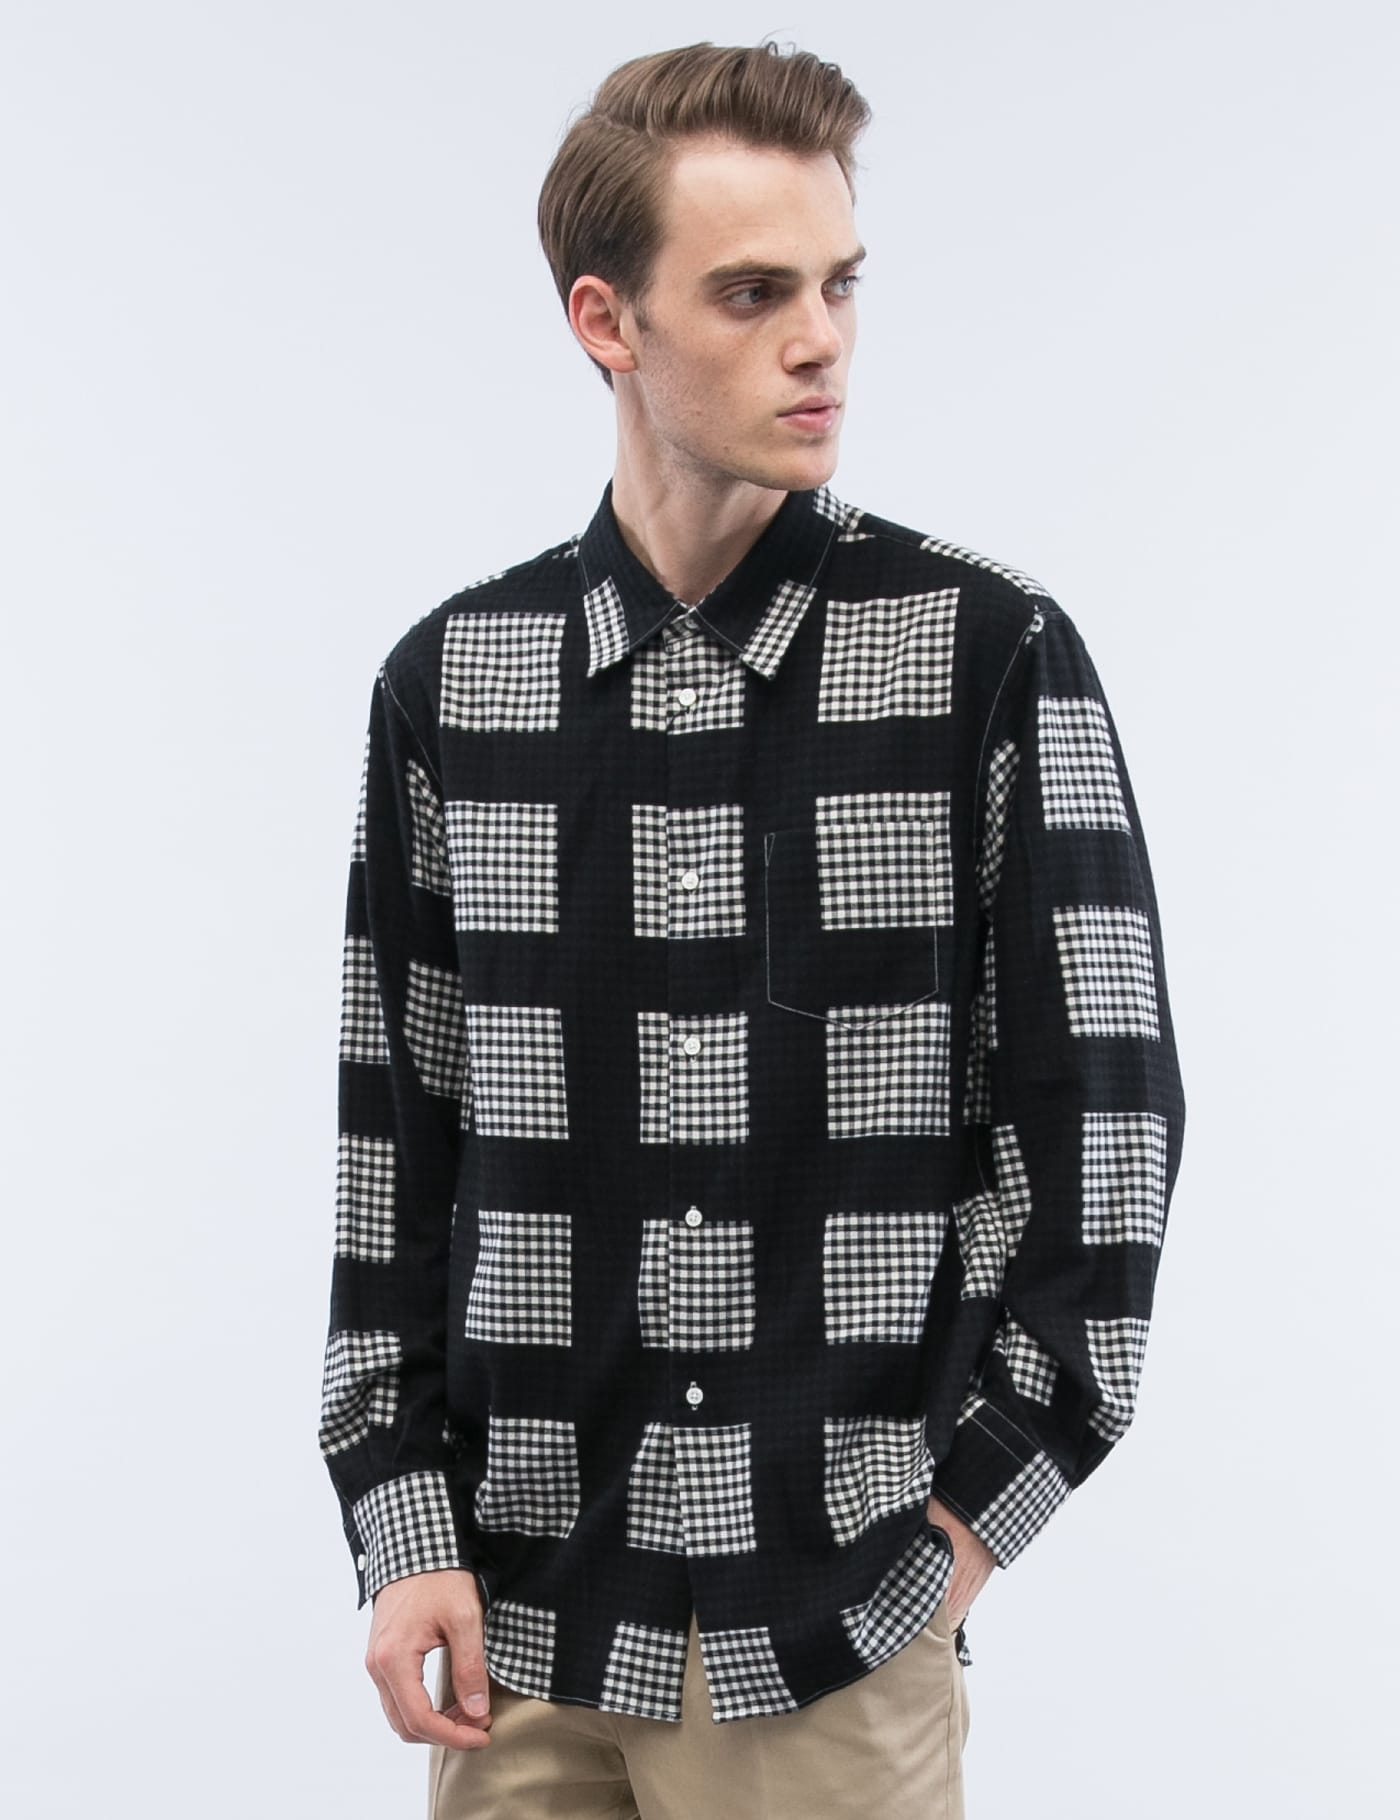 soe - Printed Block Check Shirt | HBX - Globally Curated Fashion